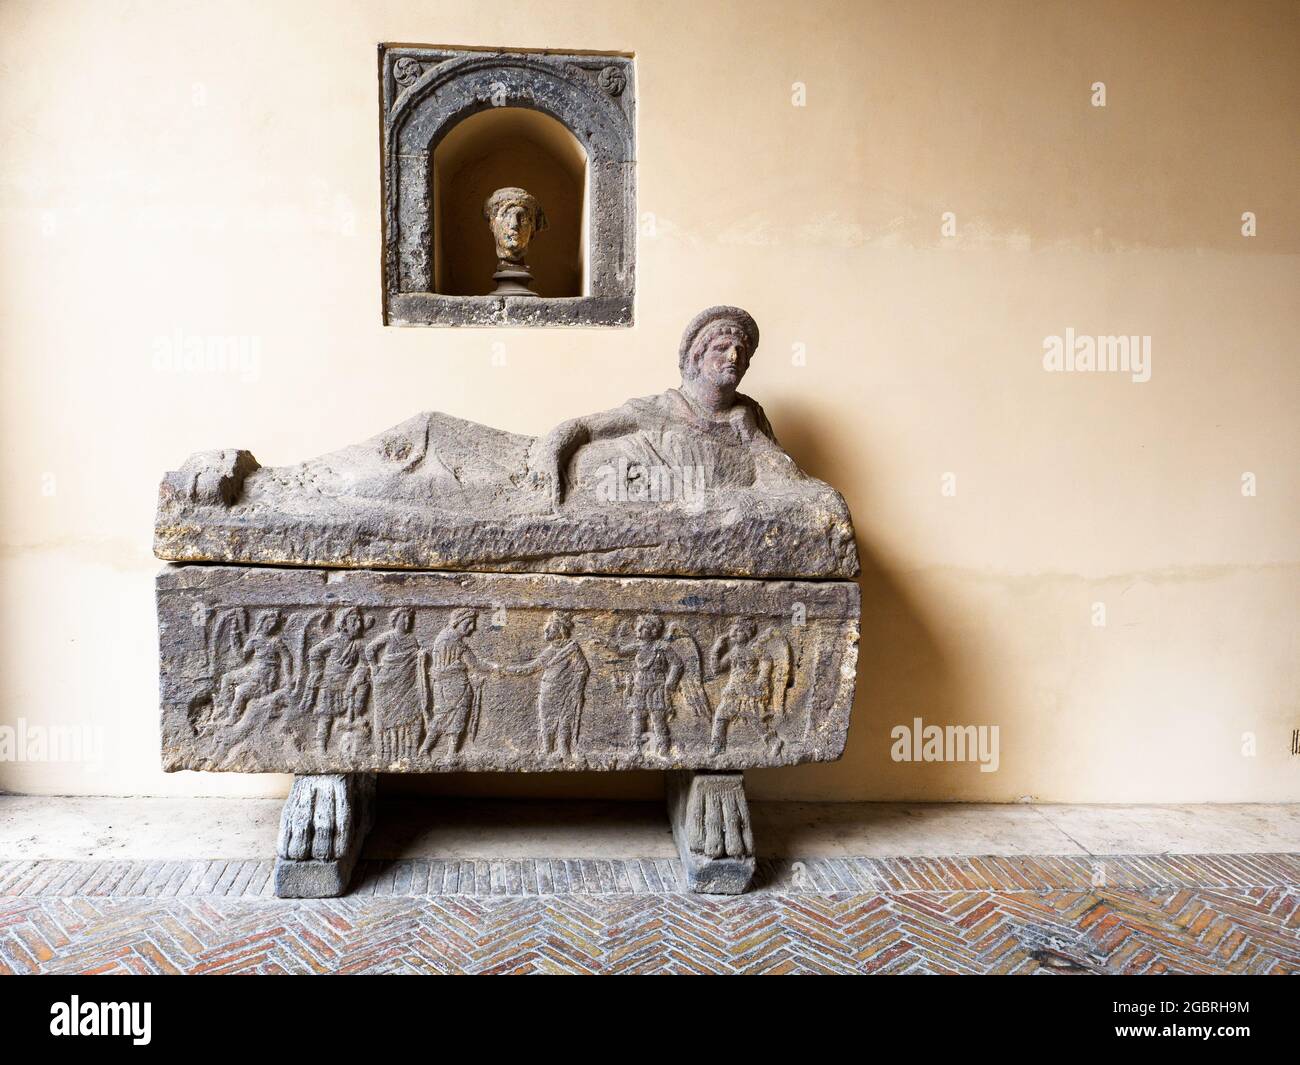 Sarcophage étrusque - Musée archéologique national de Tarquinia, Italie Banque D'Images